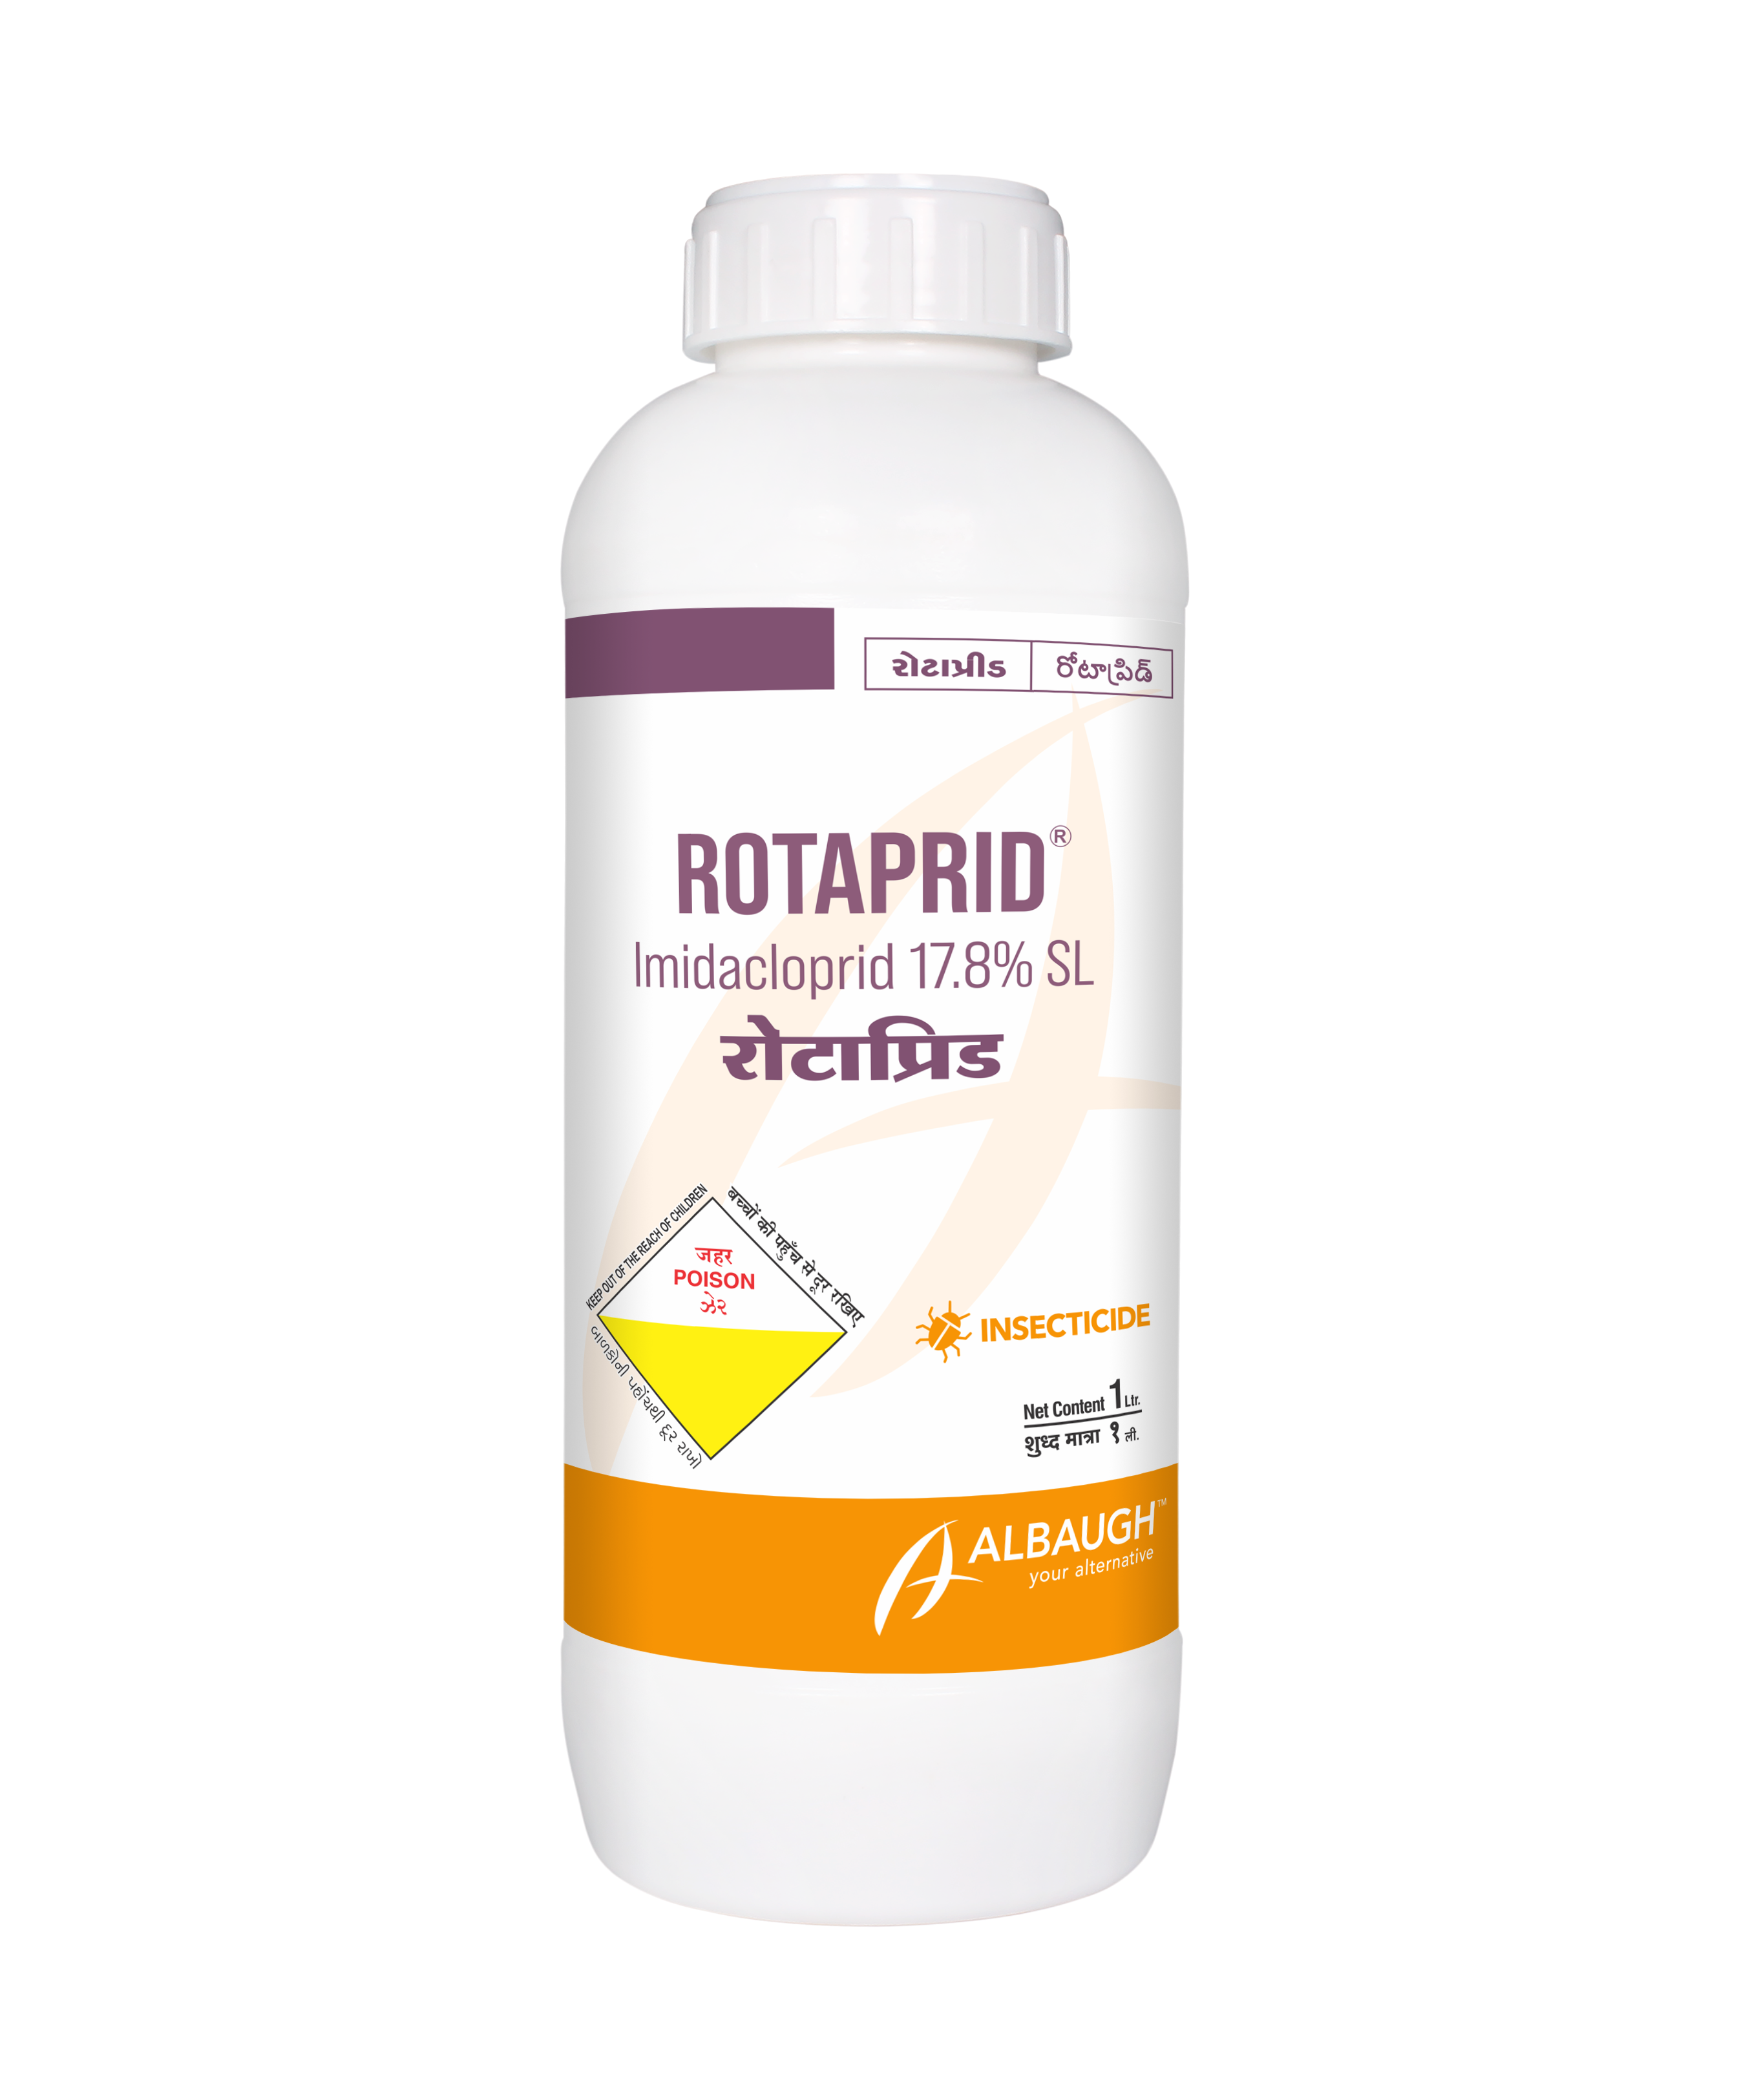 Rotaprid: Imidacloprid 17.8% SL